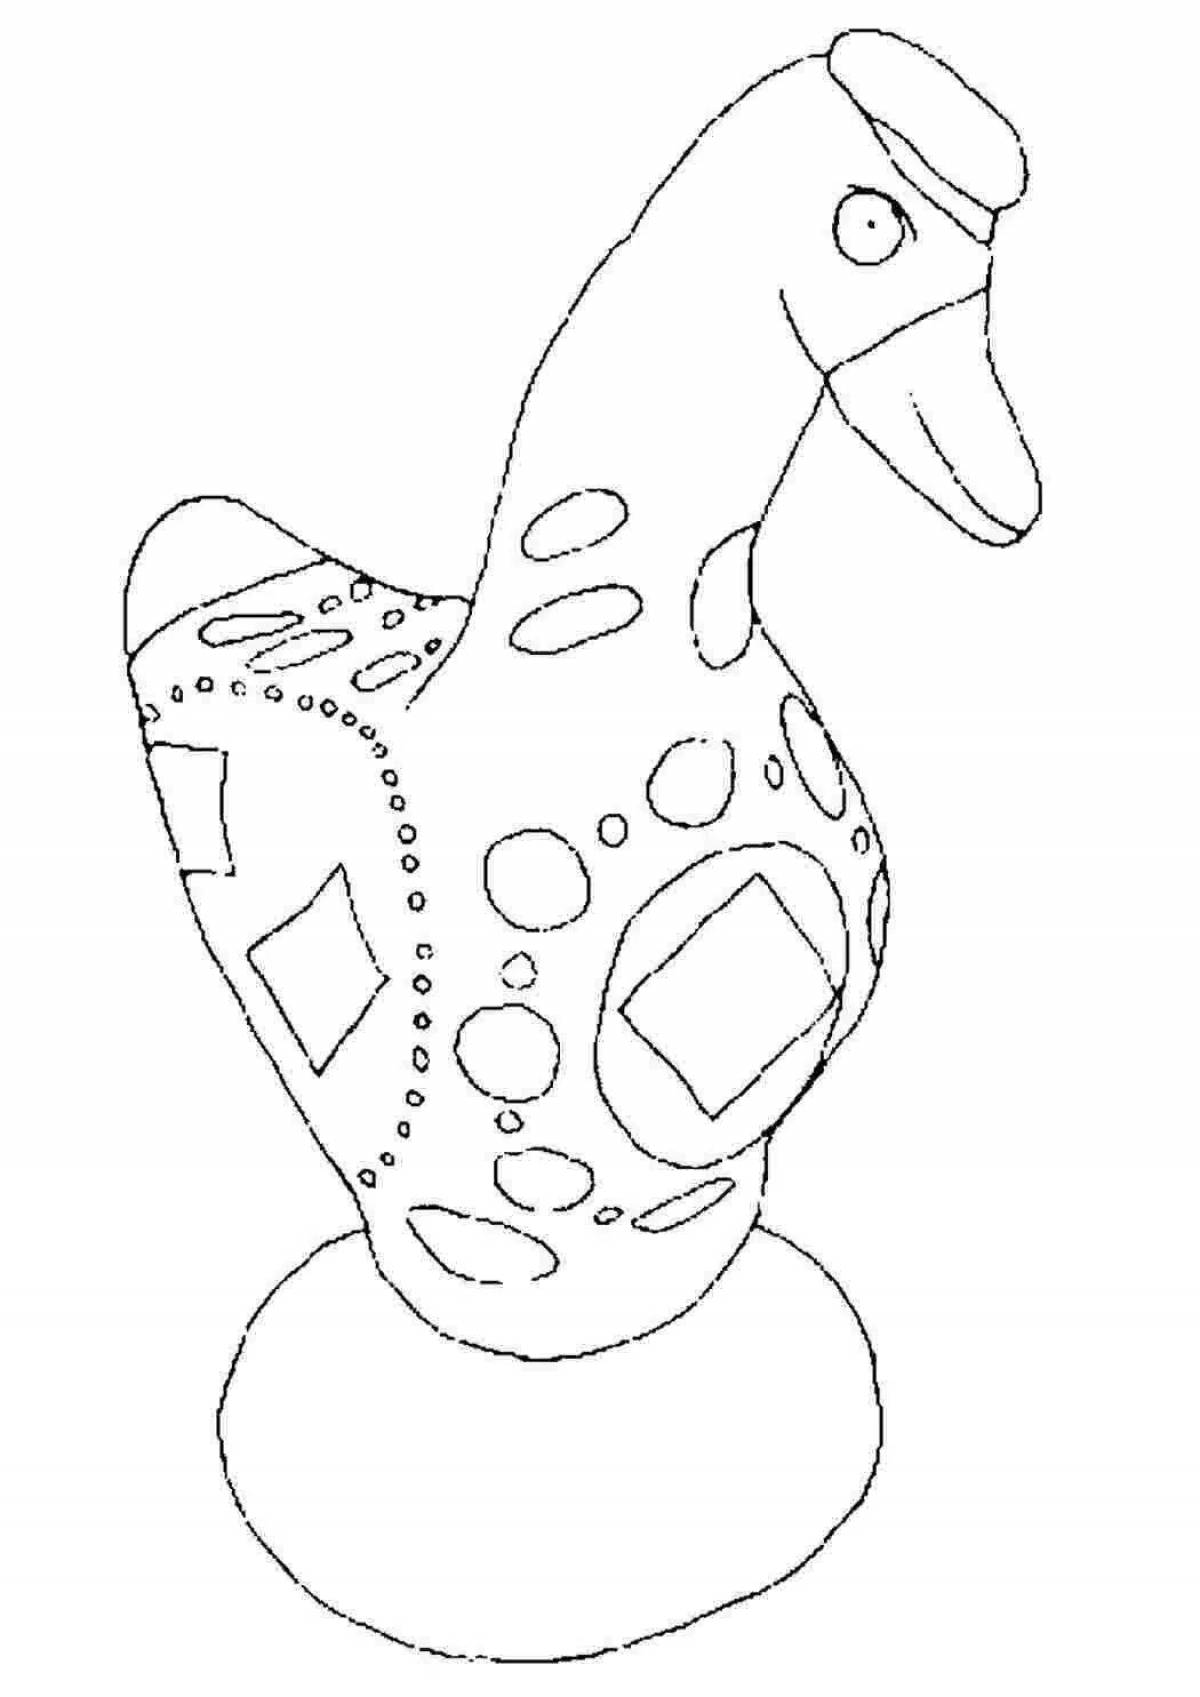 Раскраска радостная дымковская утка для детей 3-4 лет